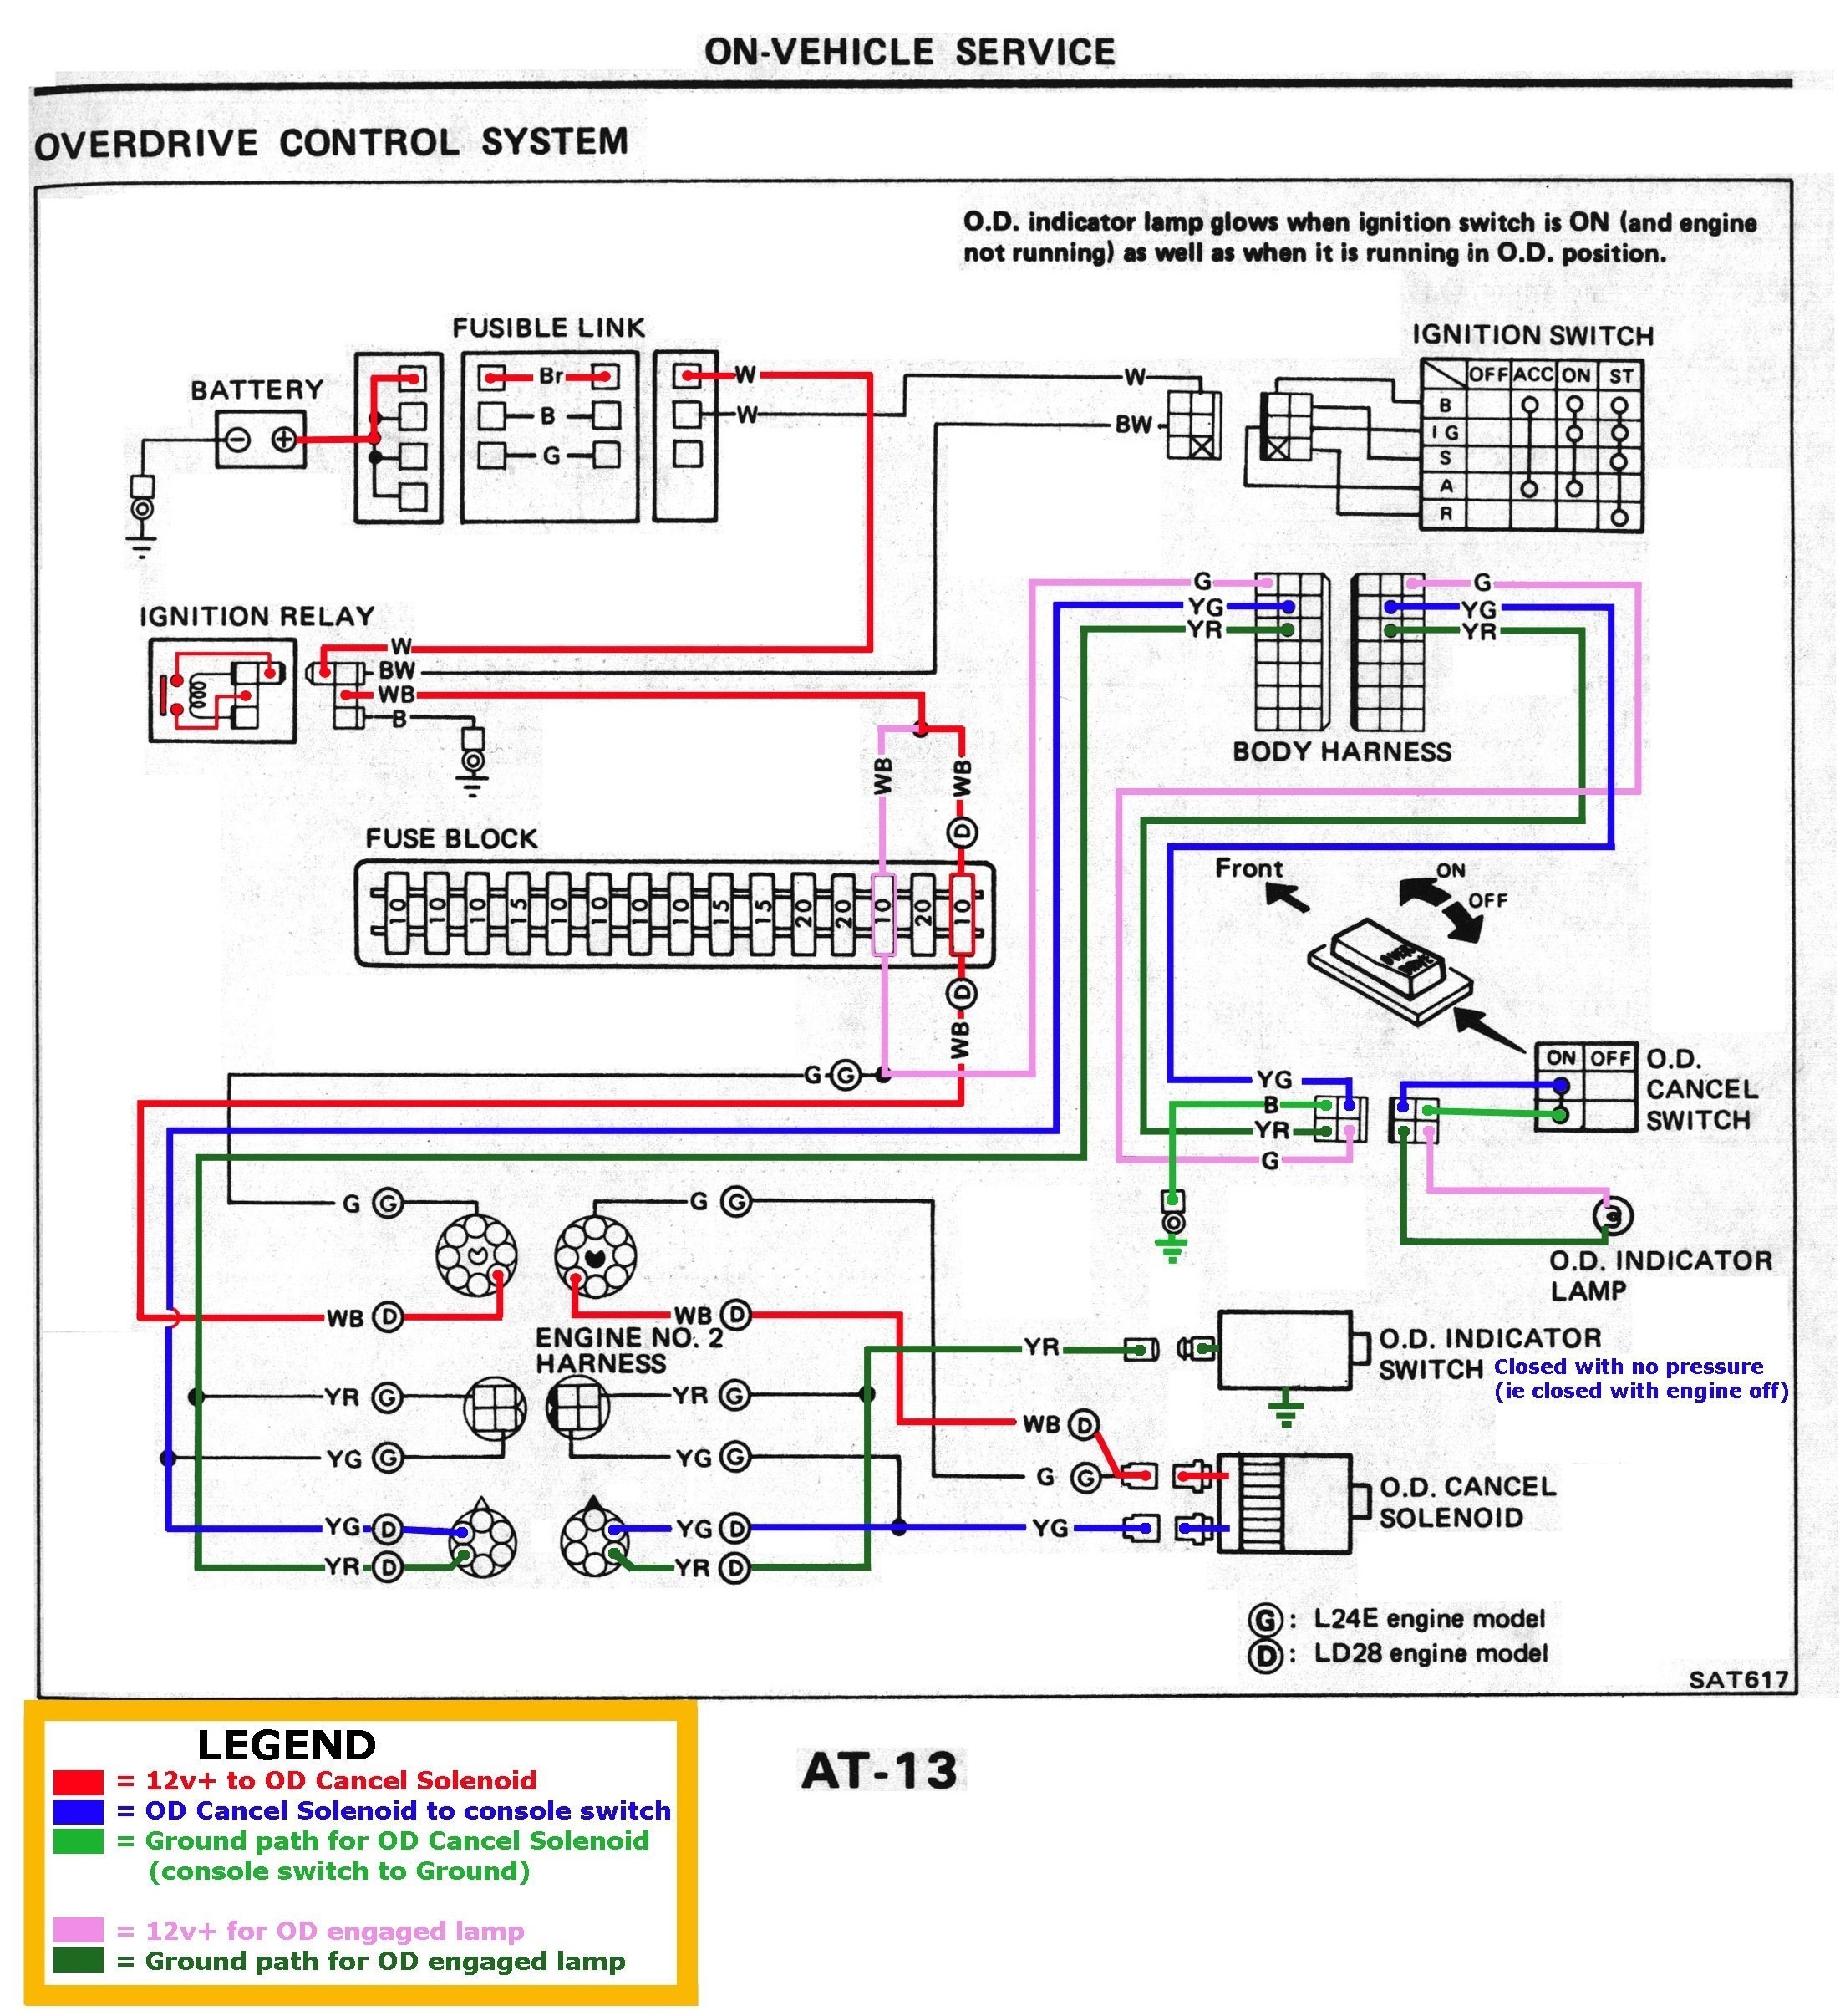 chevy 4 wire alternator wiring diagram new volvo penta marine alternator wiring diagram fresh 3 wire alternator of chevy 4 wire alternator wiring diagram